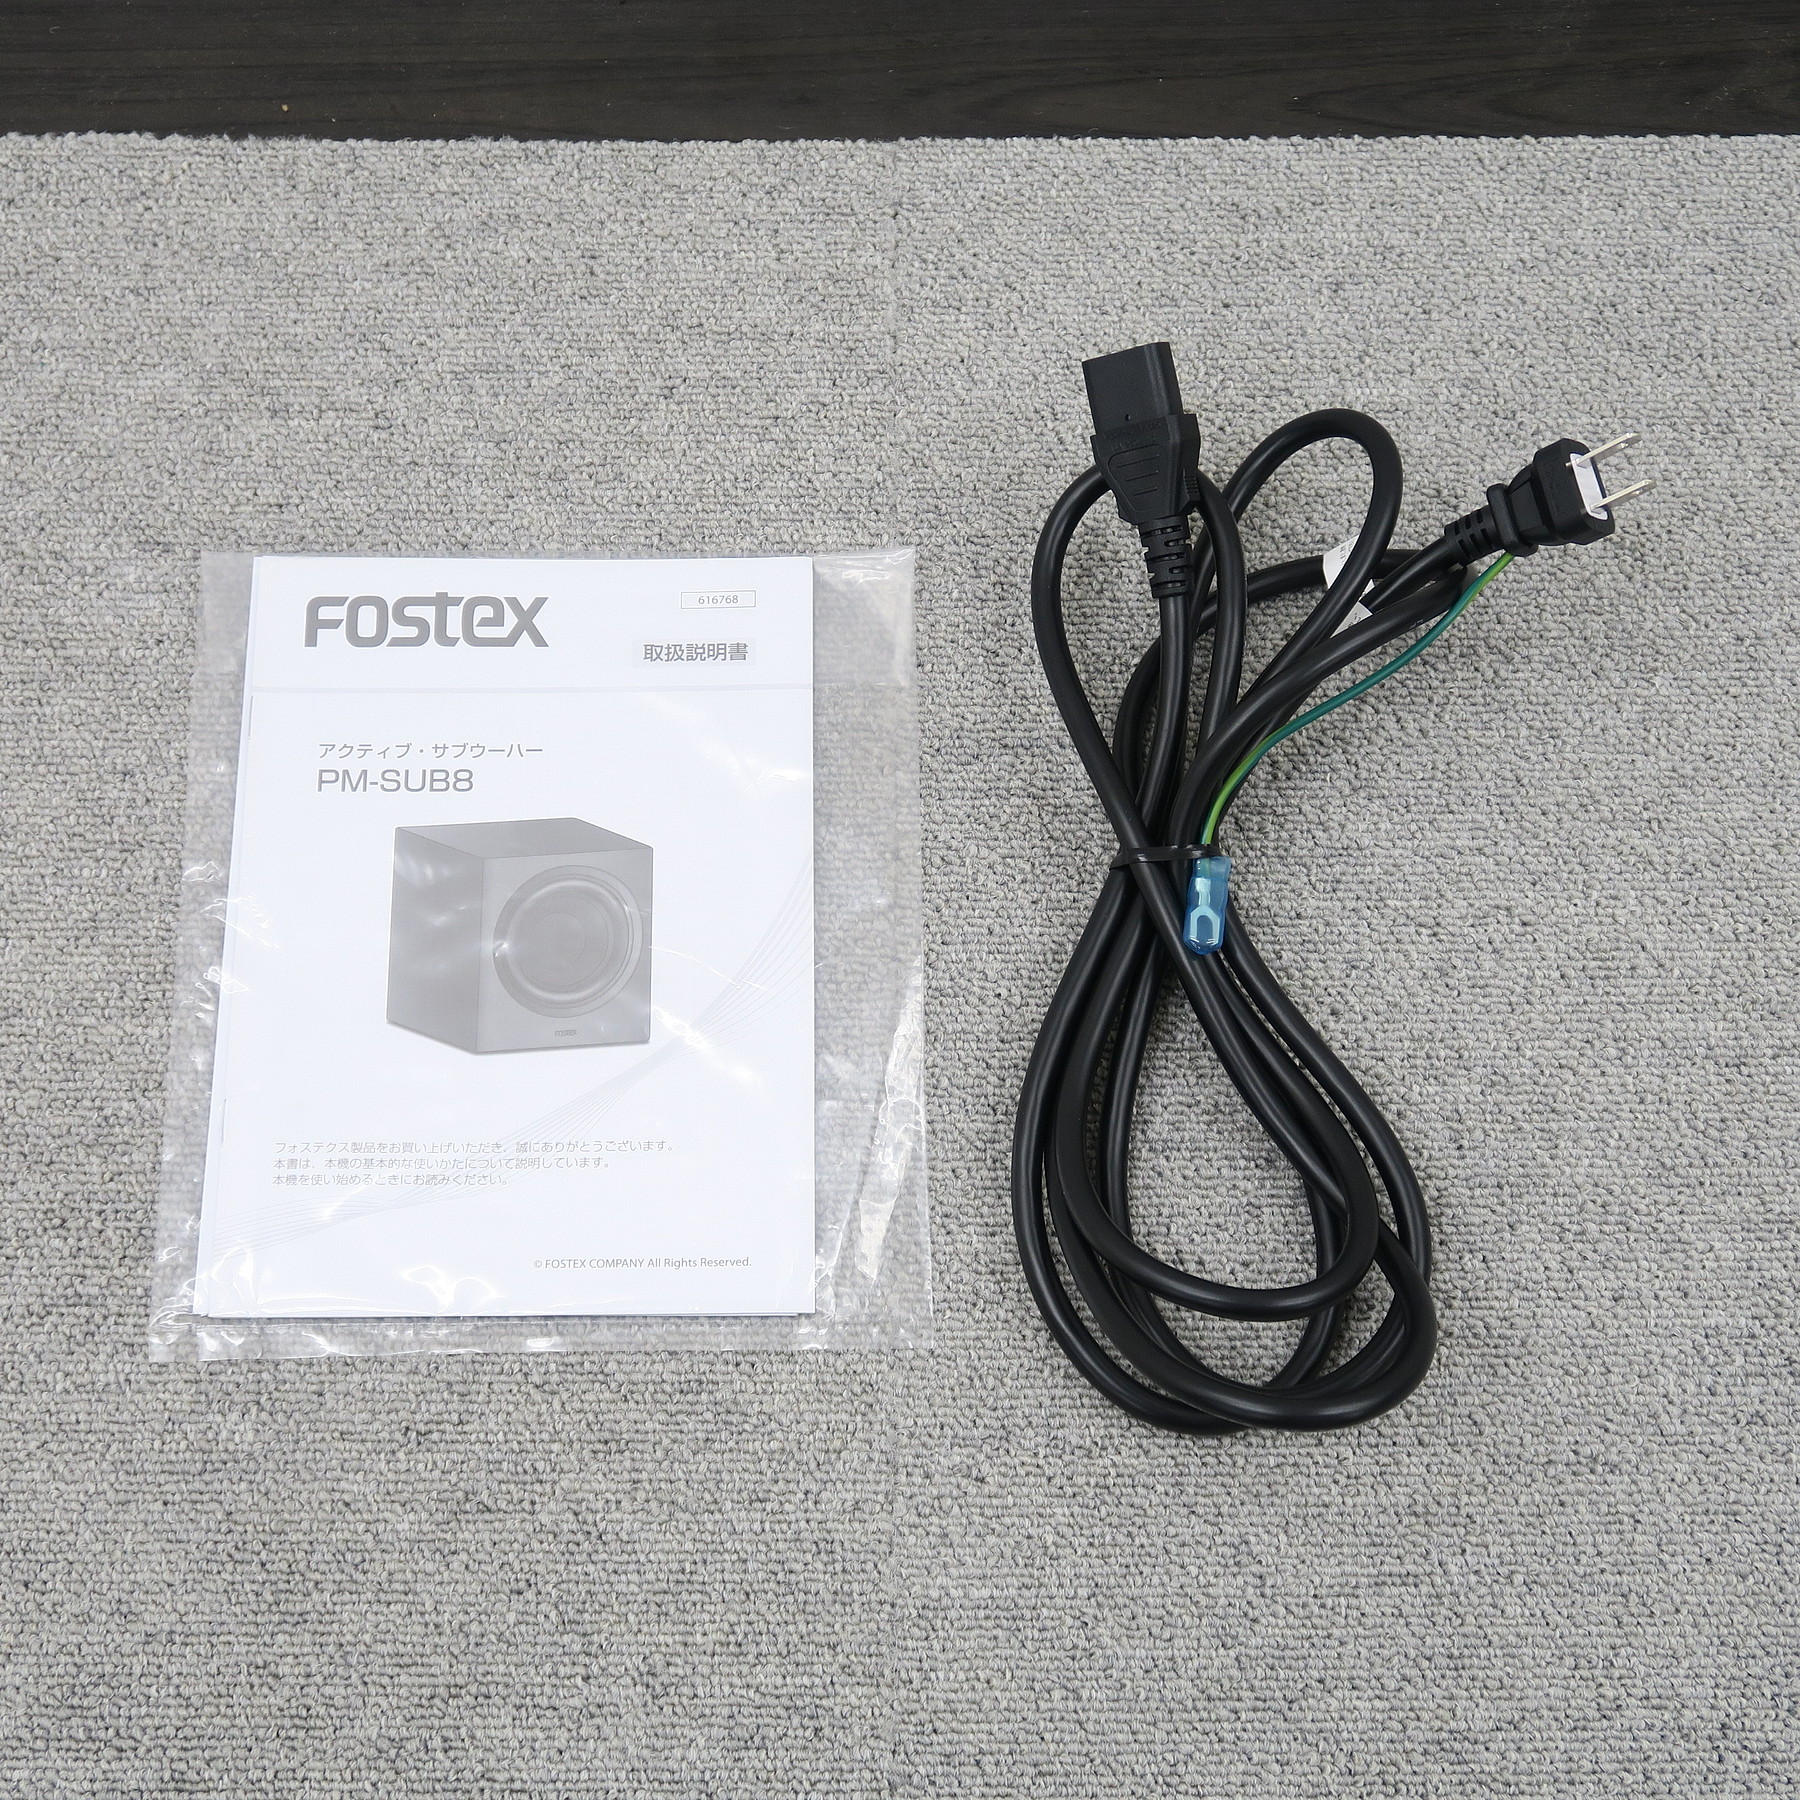 42428円 高評価なギフト FOSTEX PM-SUB8 アクティブ サブウーハー